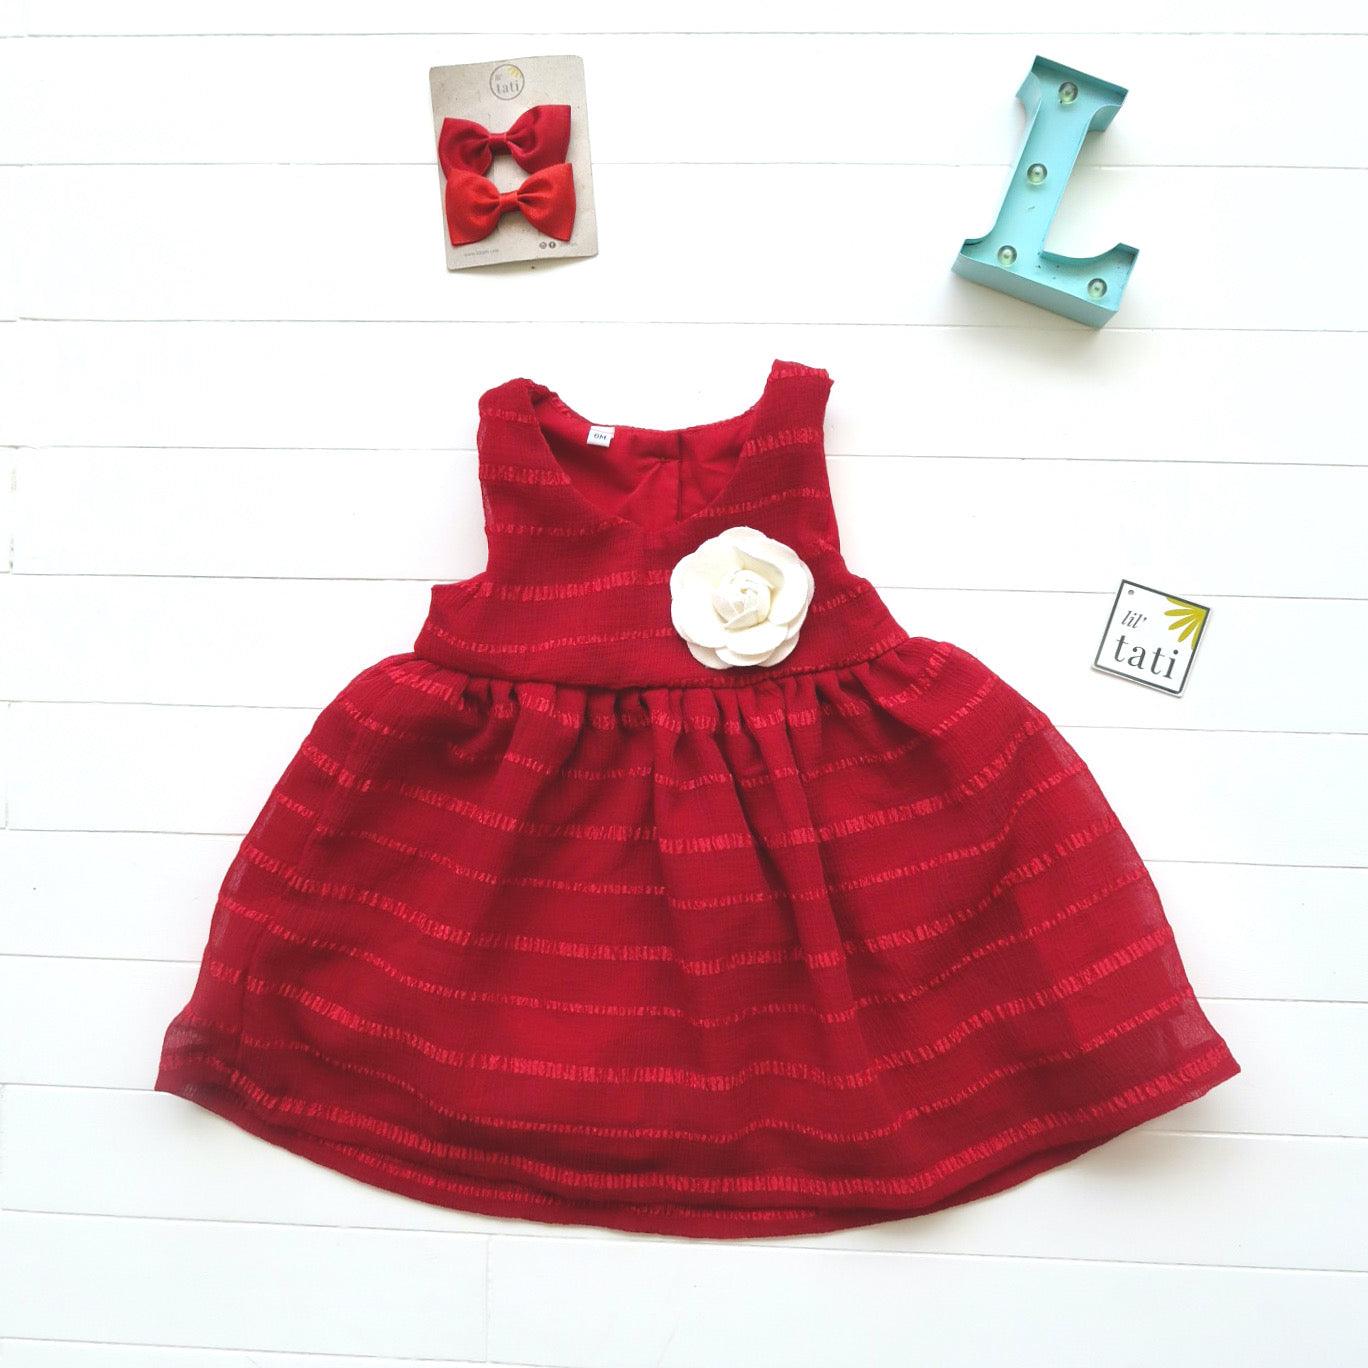 Iris Dress in Red Shear Stripes - Lil' Tati